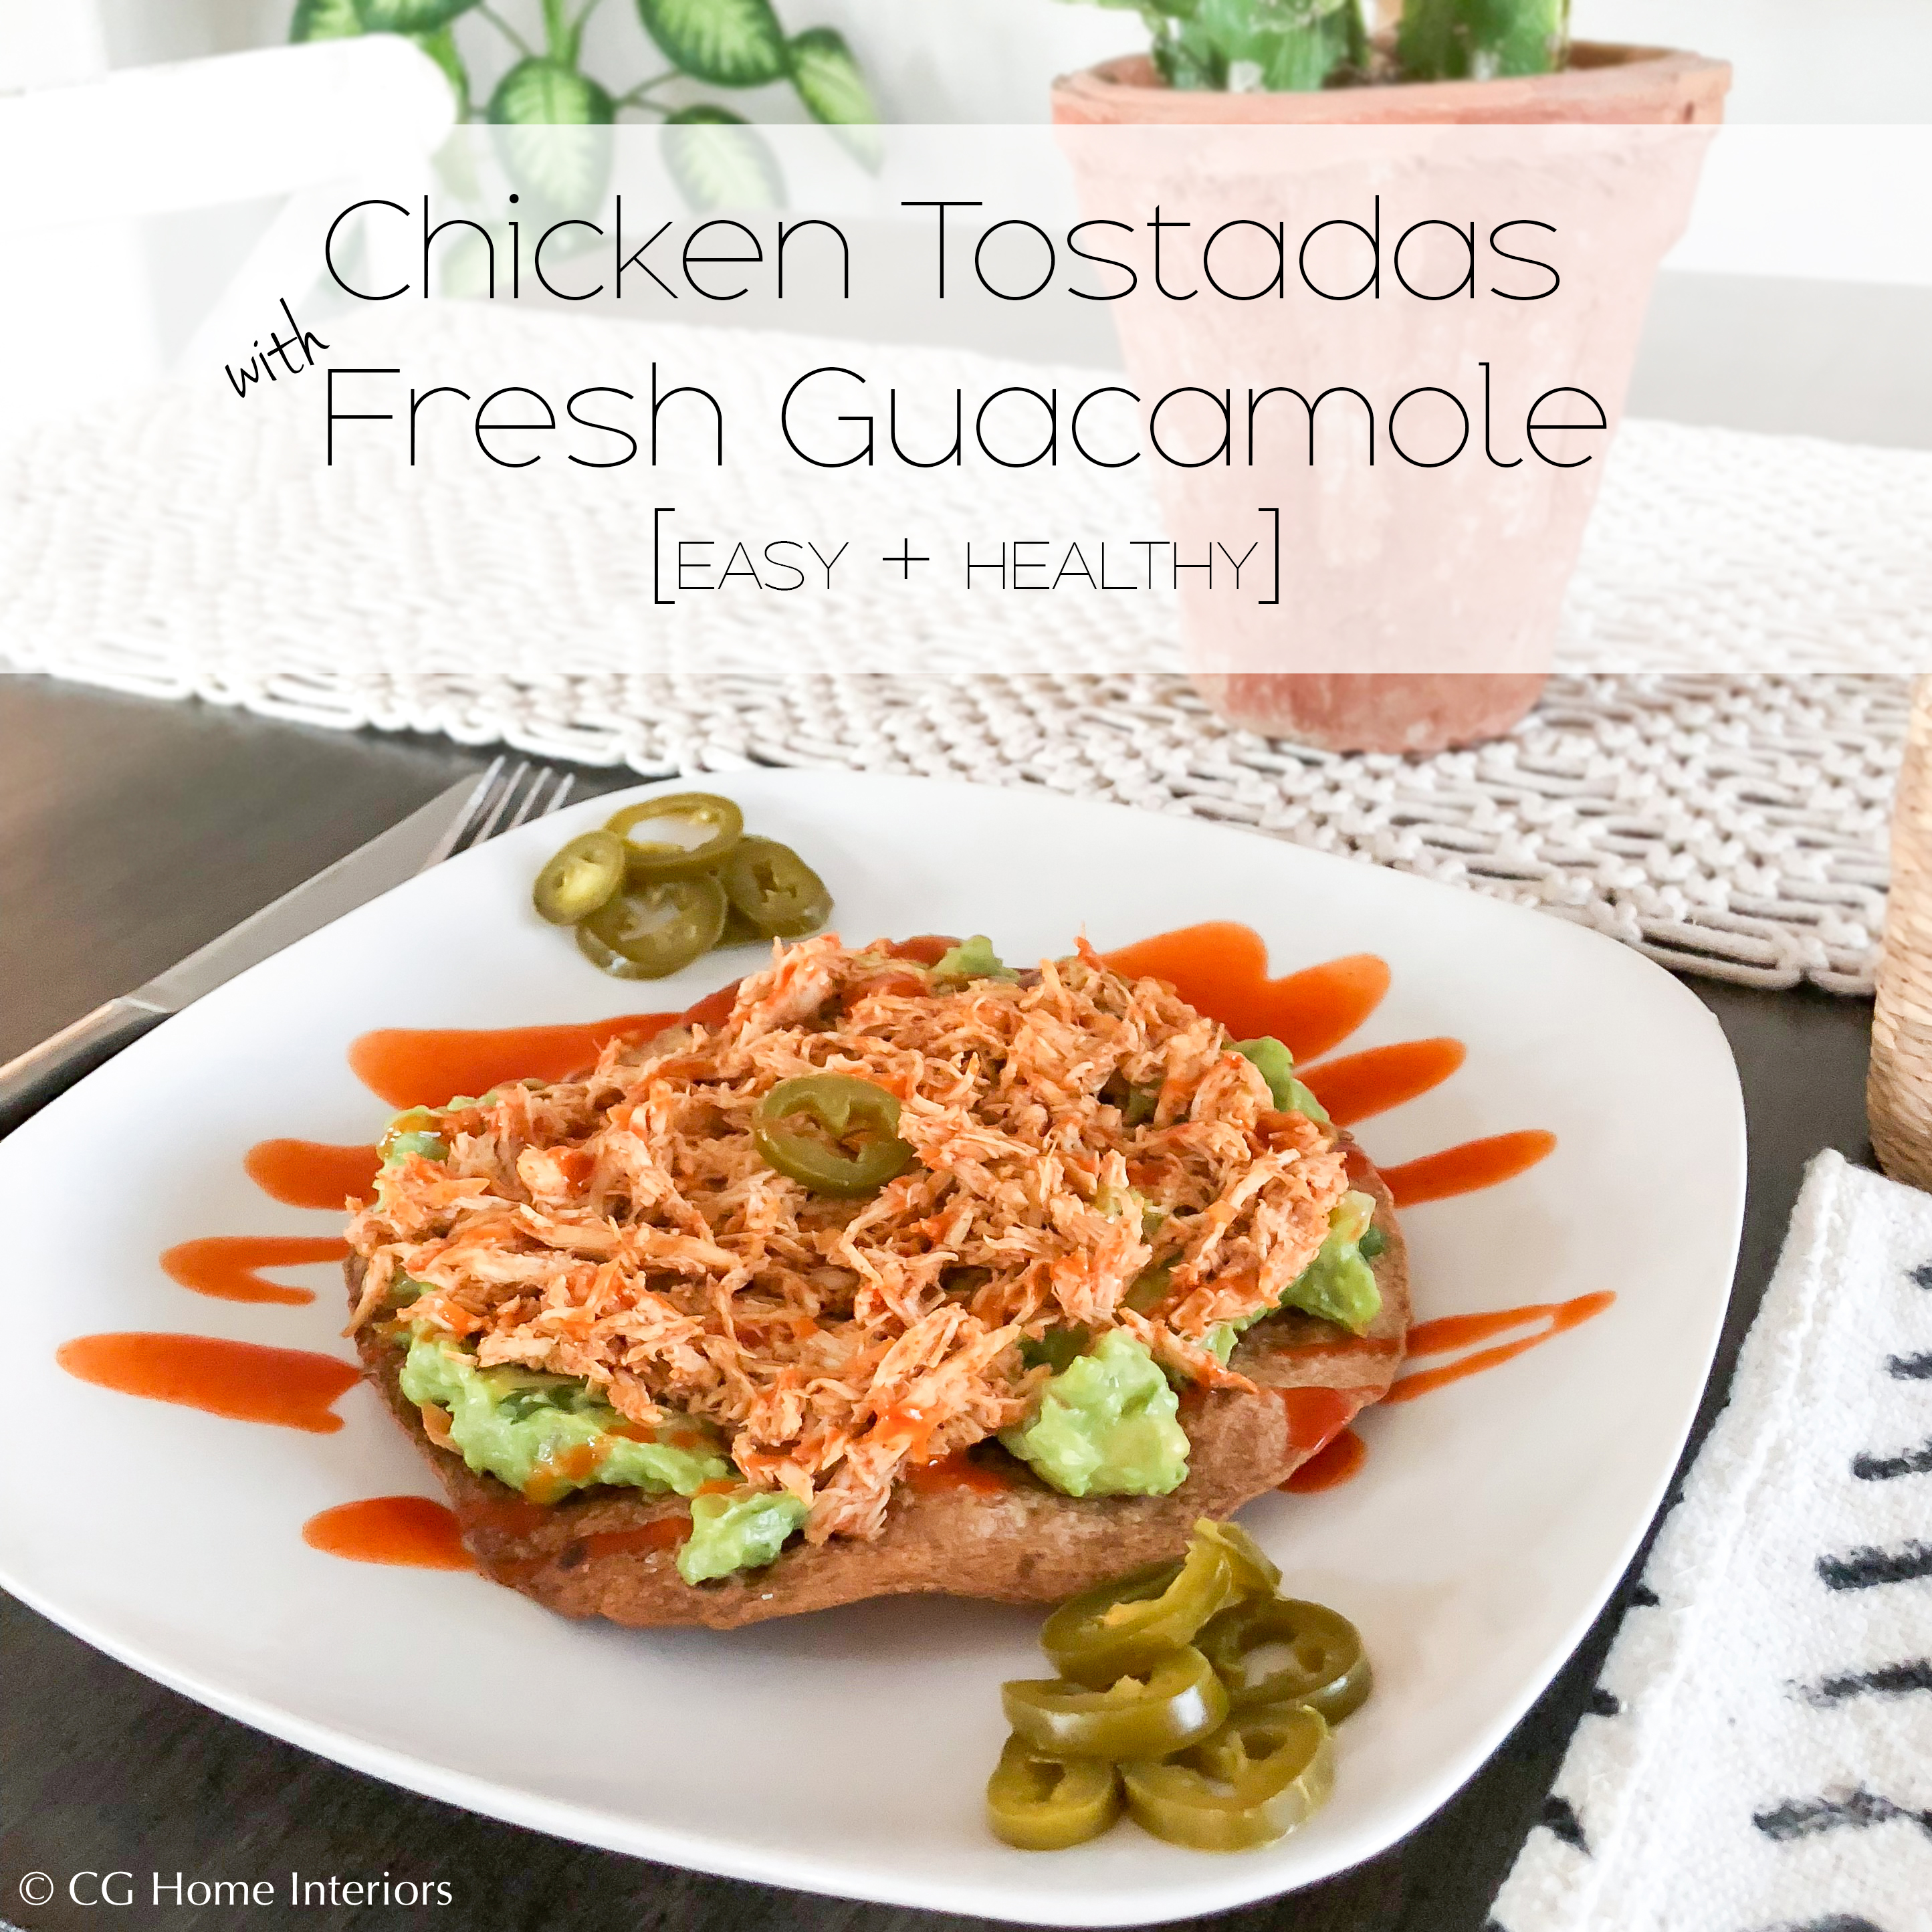 Easy + Healthy Chicken Tostadas with Fresh Guacamole